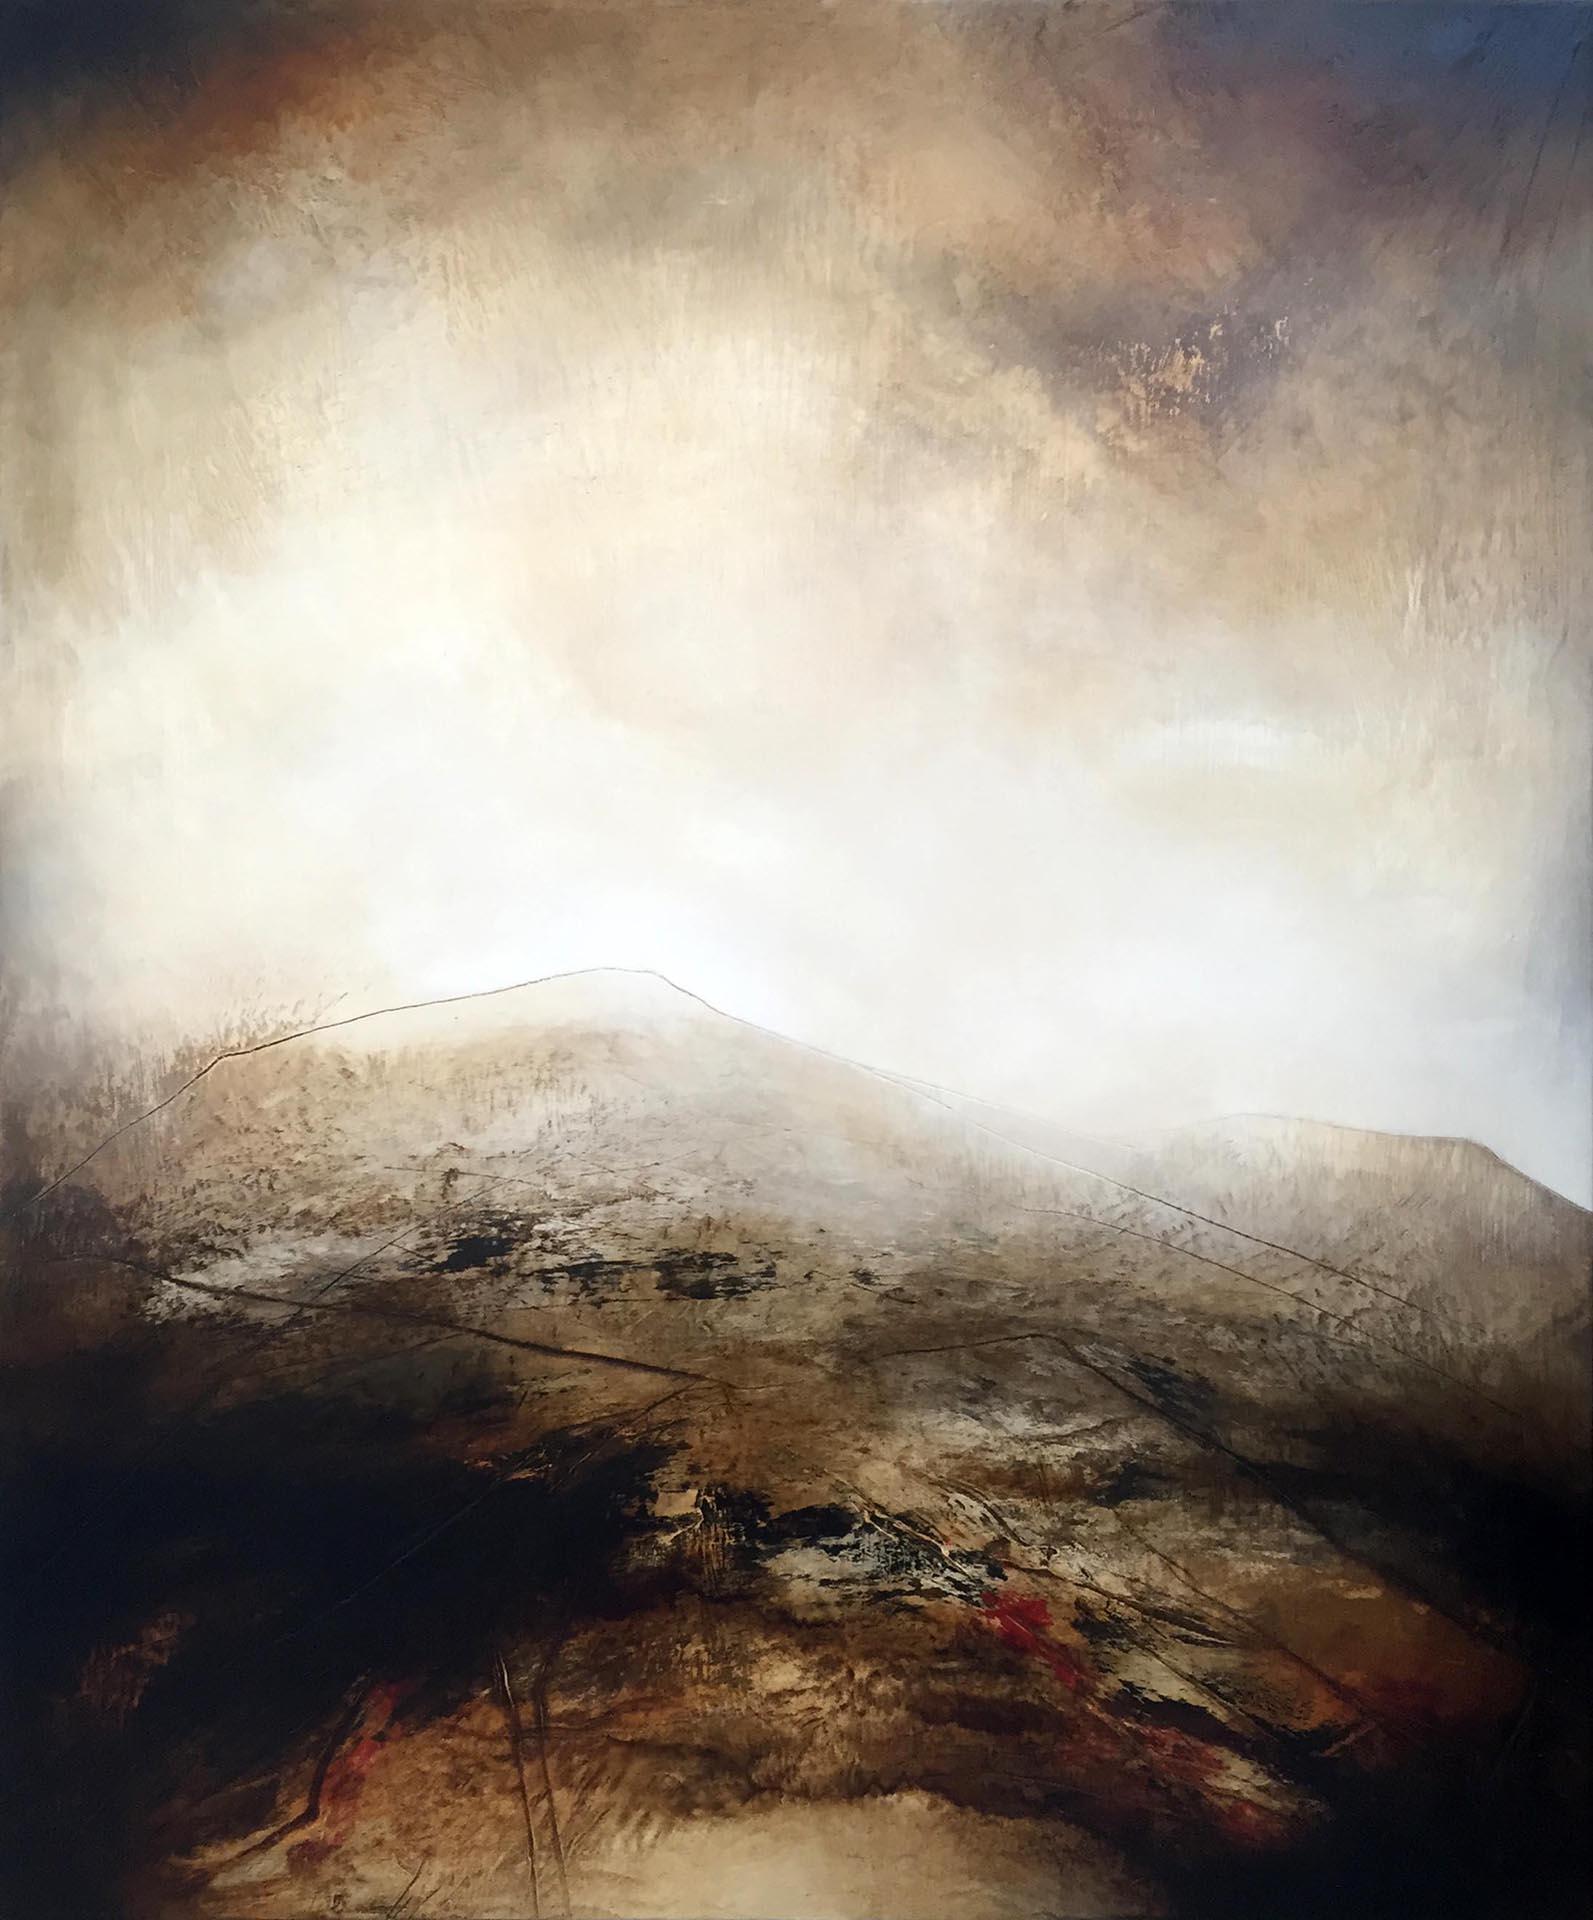 Peinture de paysage abstrait d'une moorland anglaise dans des tons terreux